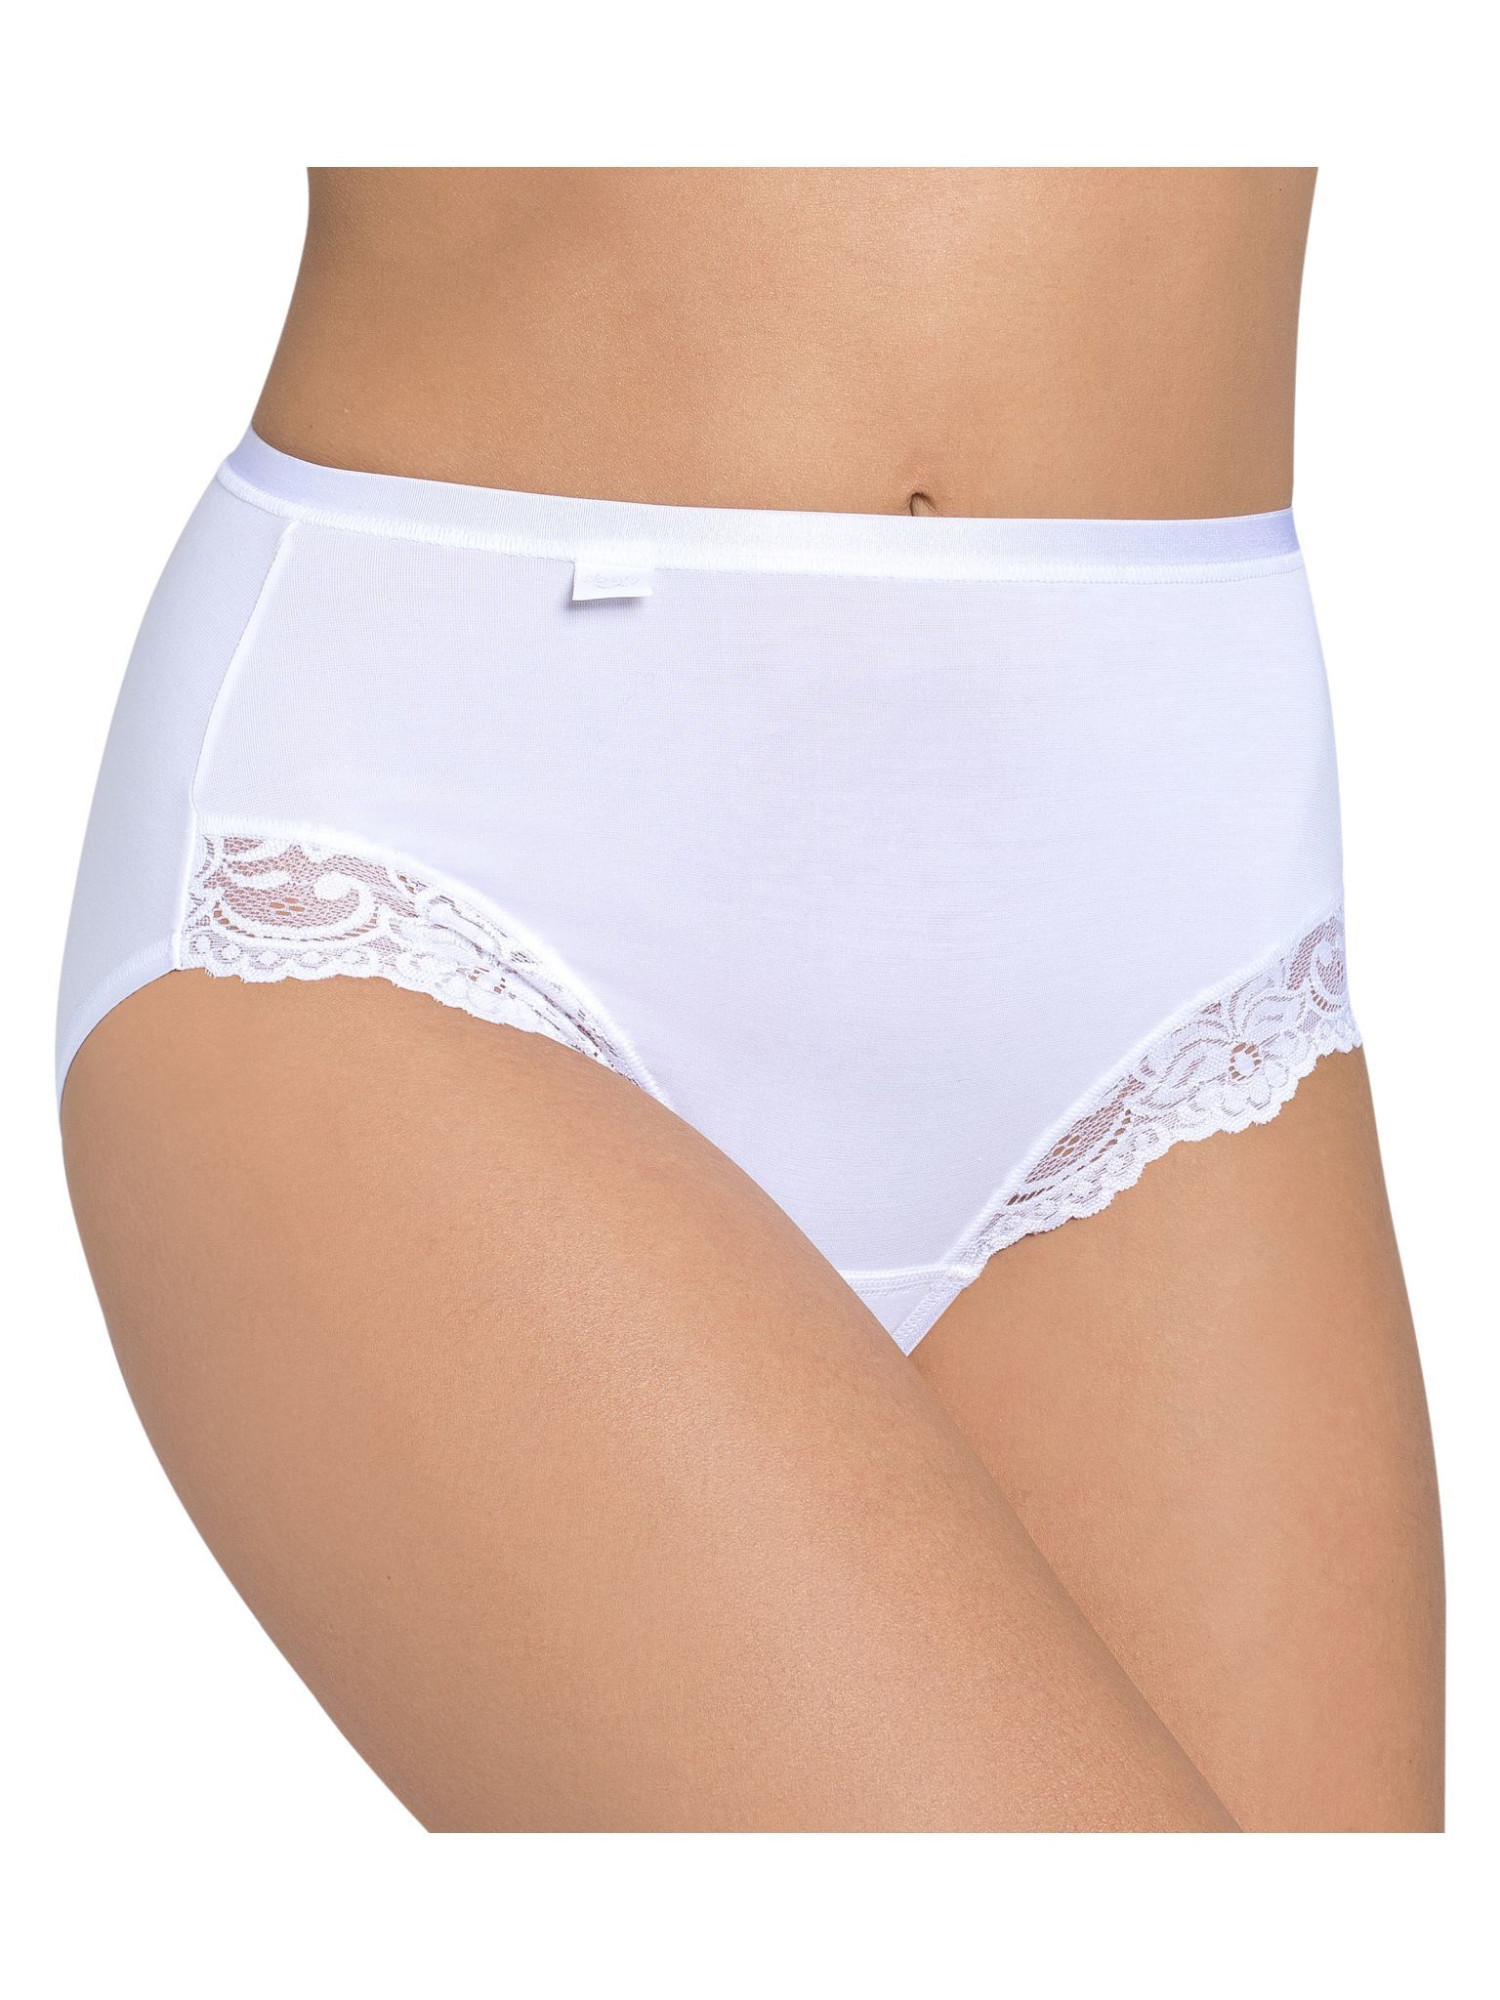 Dámské kalhotky Romance Maxi bílé - Sloggi WHITE 44